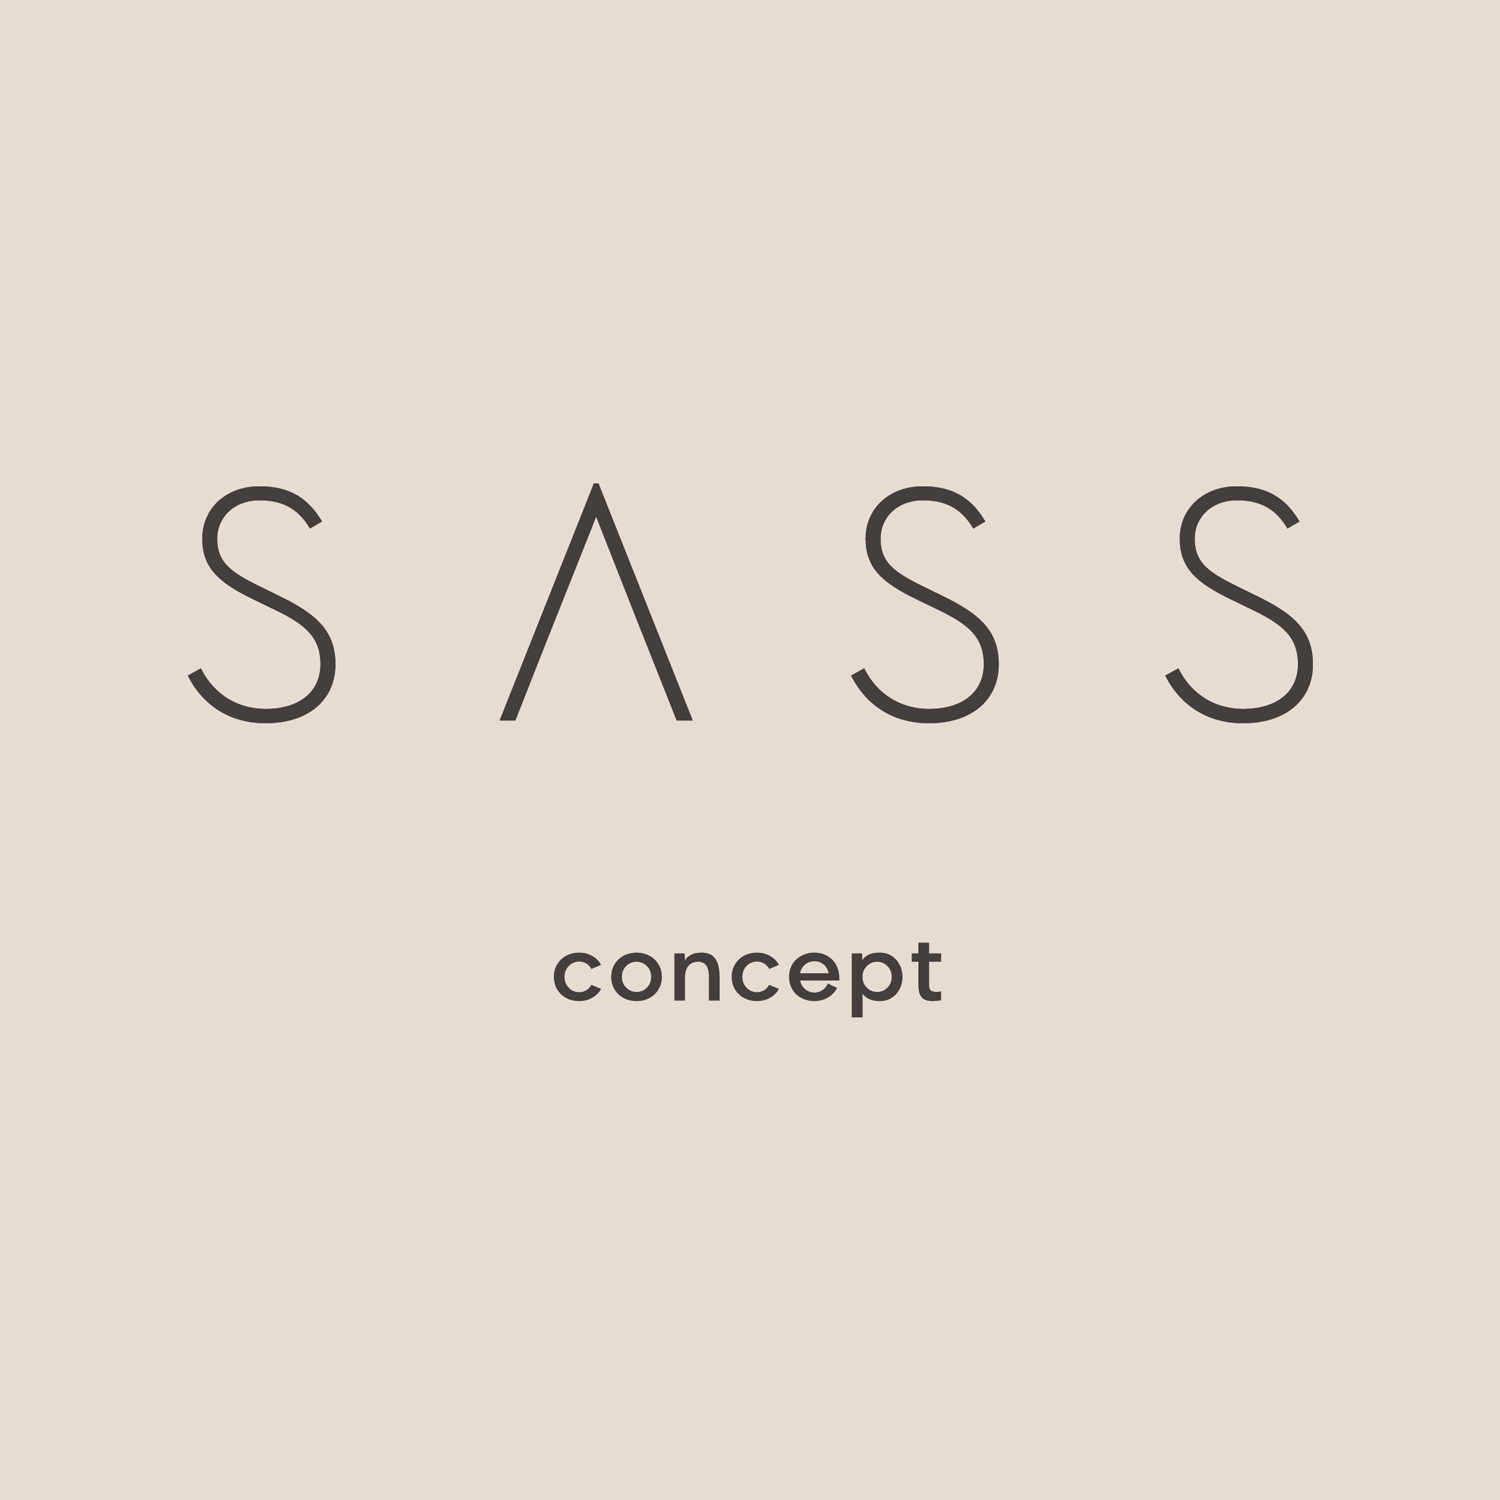 SASS CONCEPT